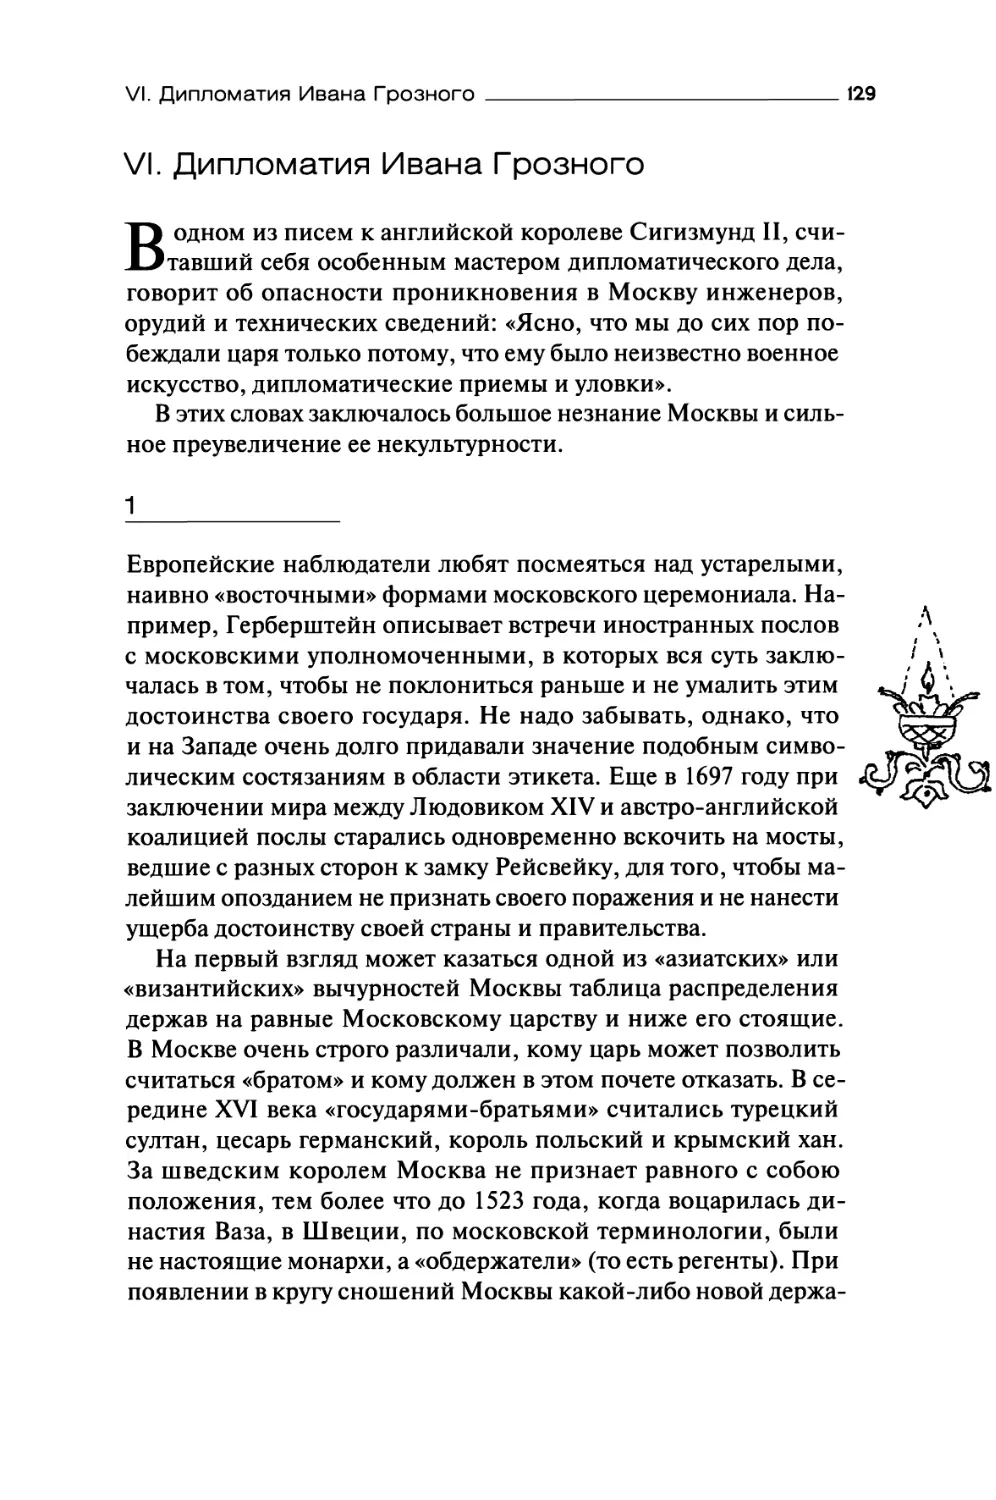 VI. Дипломатия Ивана Грозного